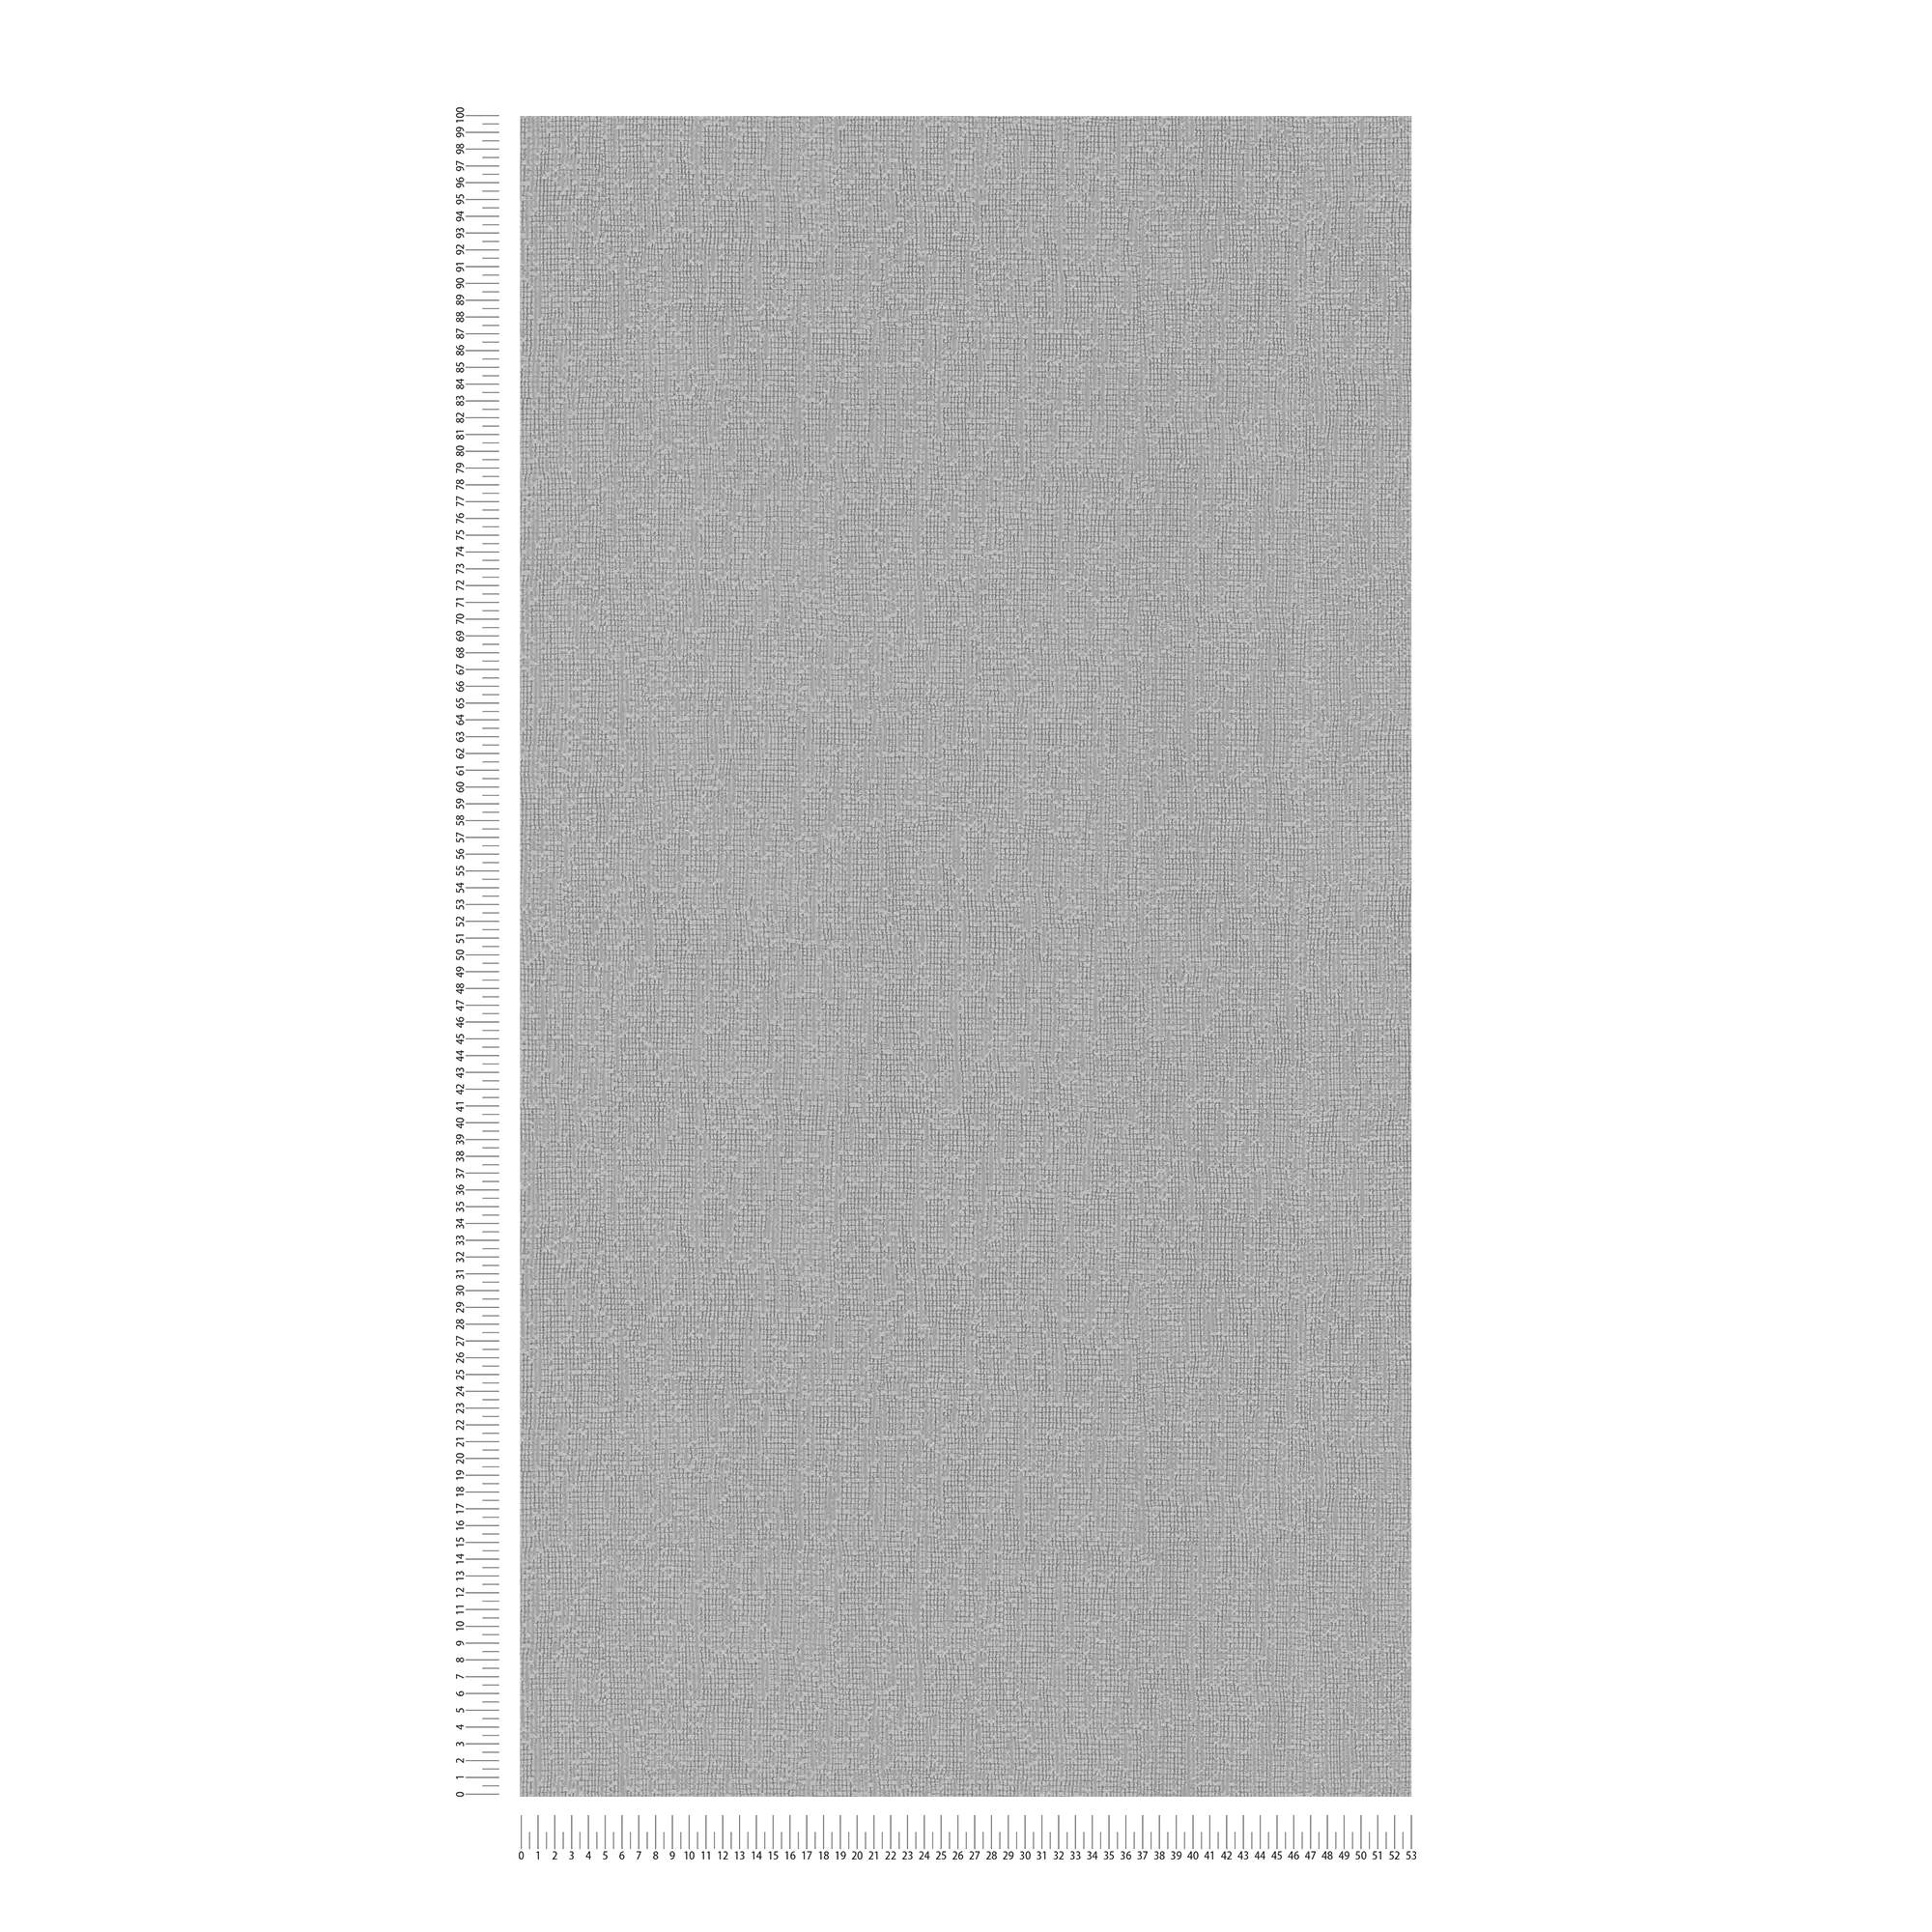             Tapete einfarbig mit Strukturdetails, Scandi Stile – Grau
        